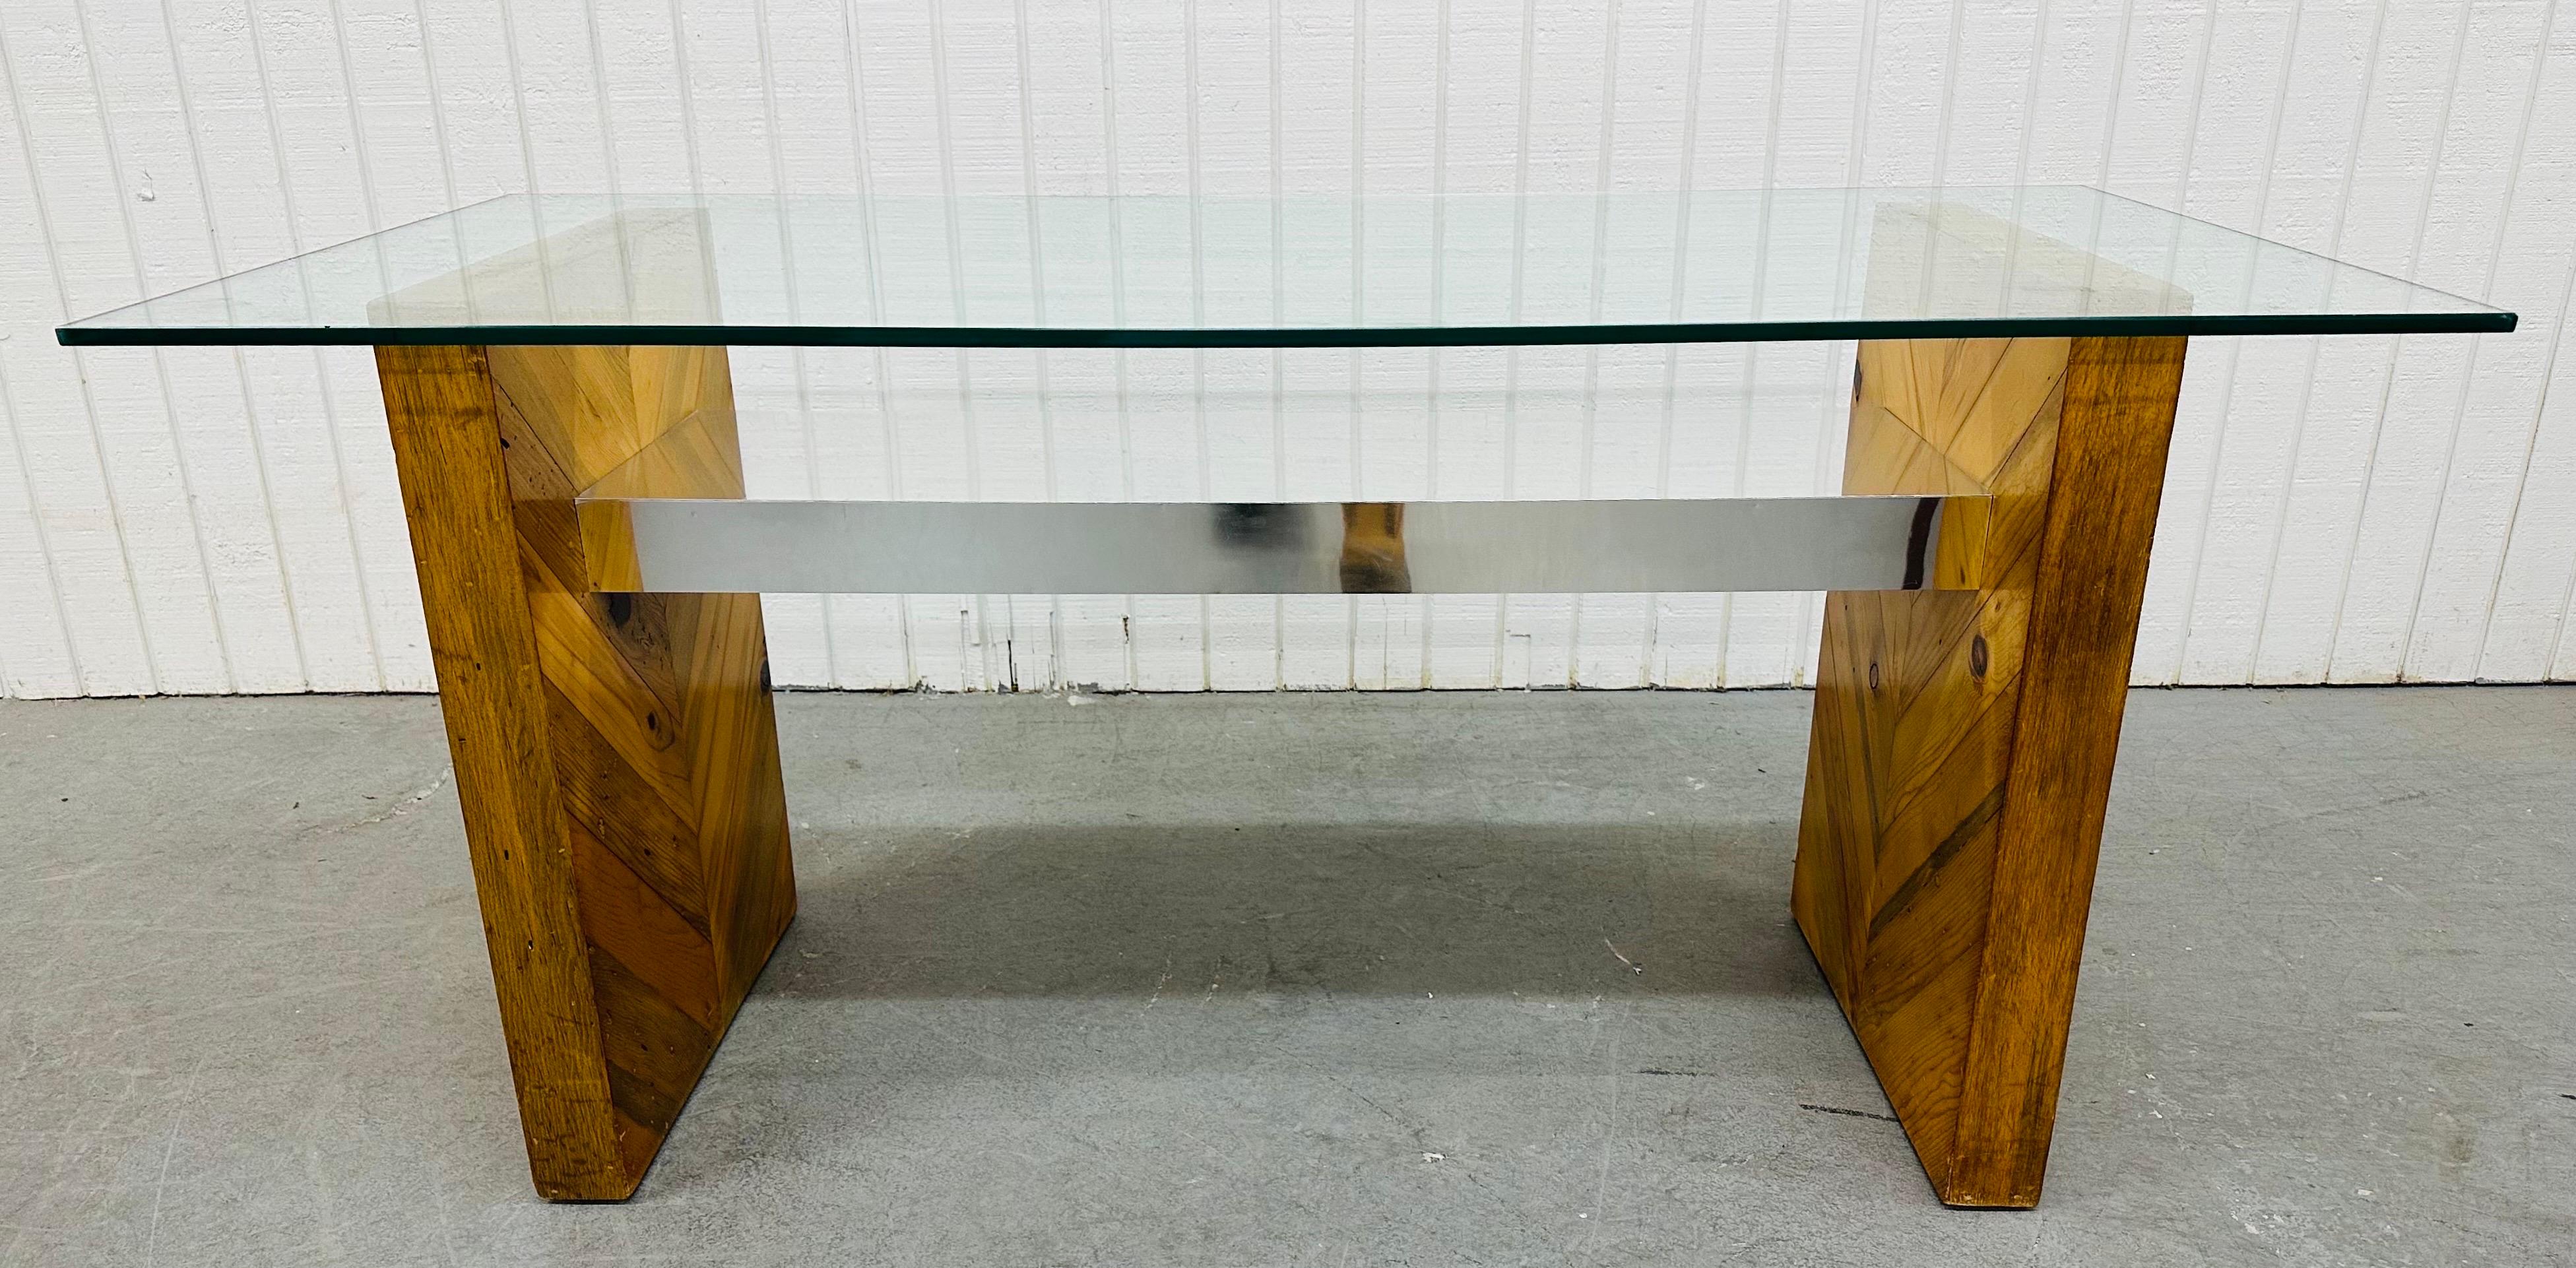 Cette annonce concerne une table console en verre de style Paul Evans, d'époque moderne. Avec un plateau rectangulaire en verre, un socle en bois mixte et en chrome, et un magnifique design dans le style de Paul Evans !